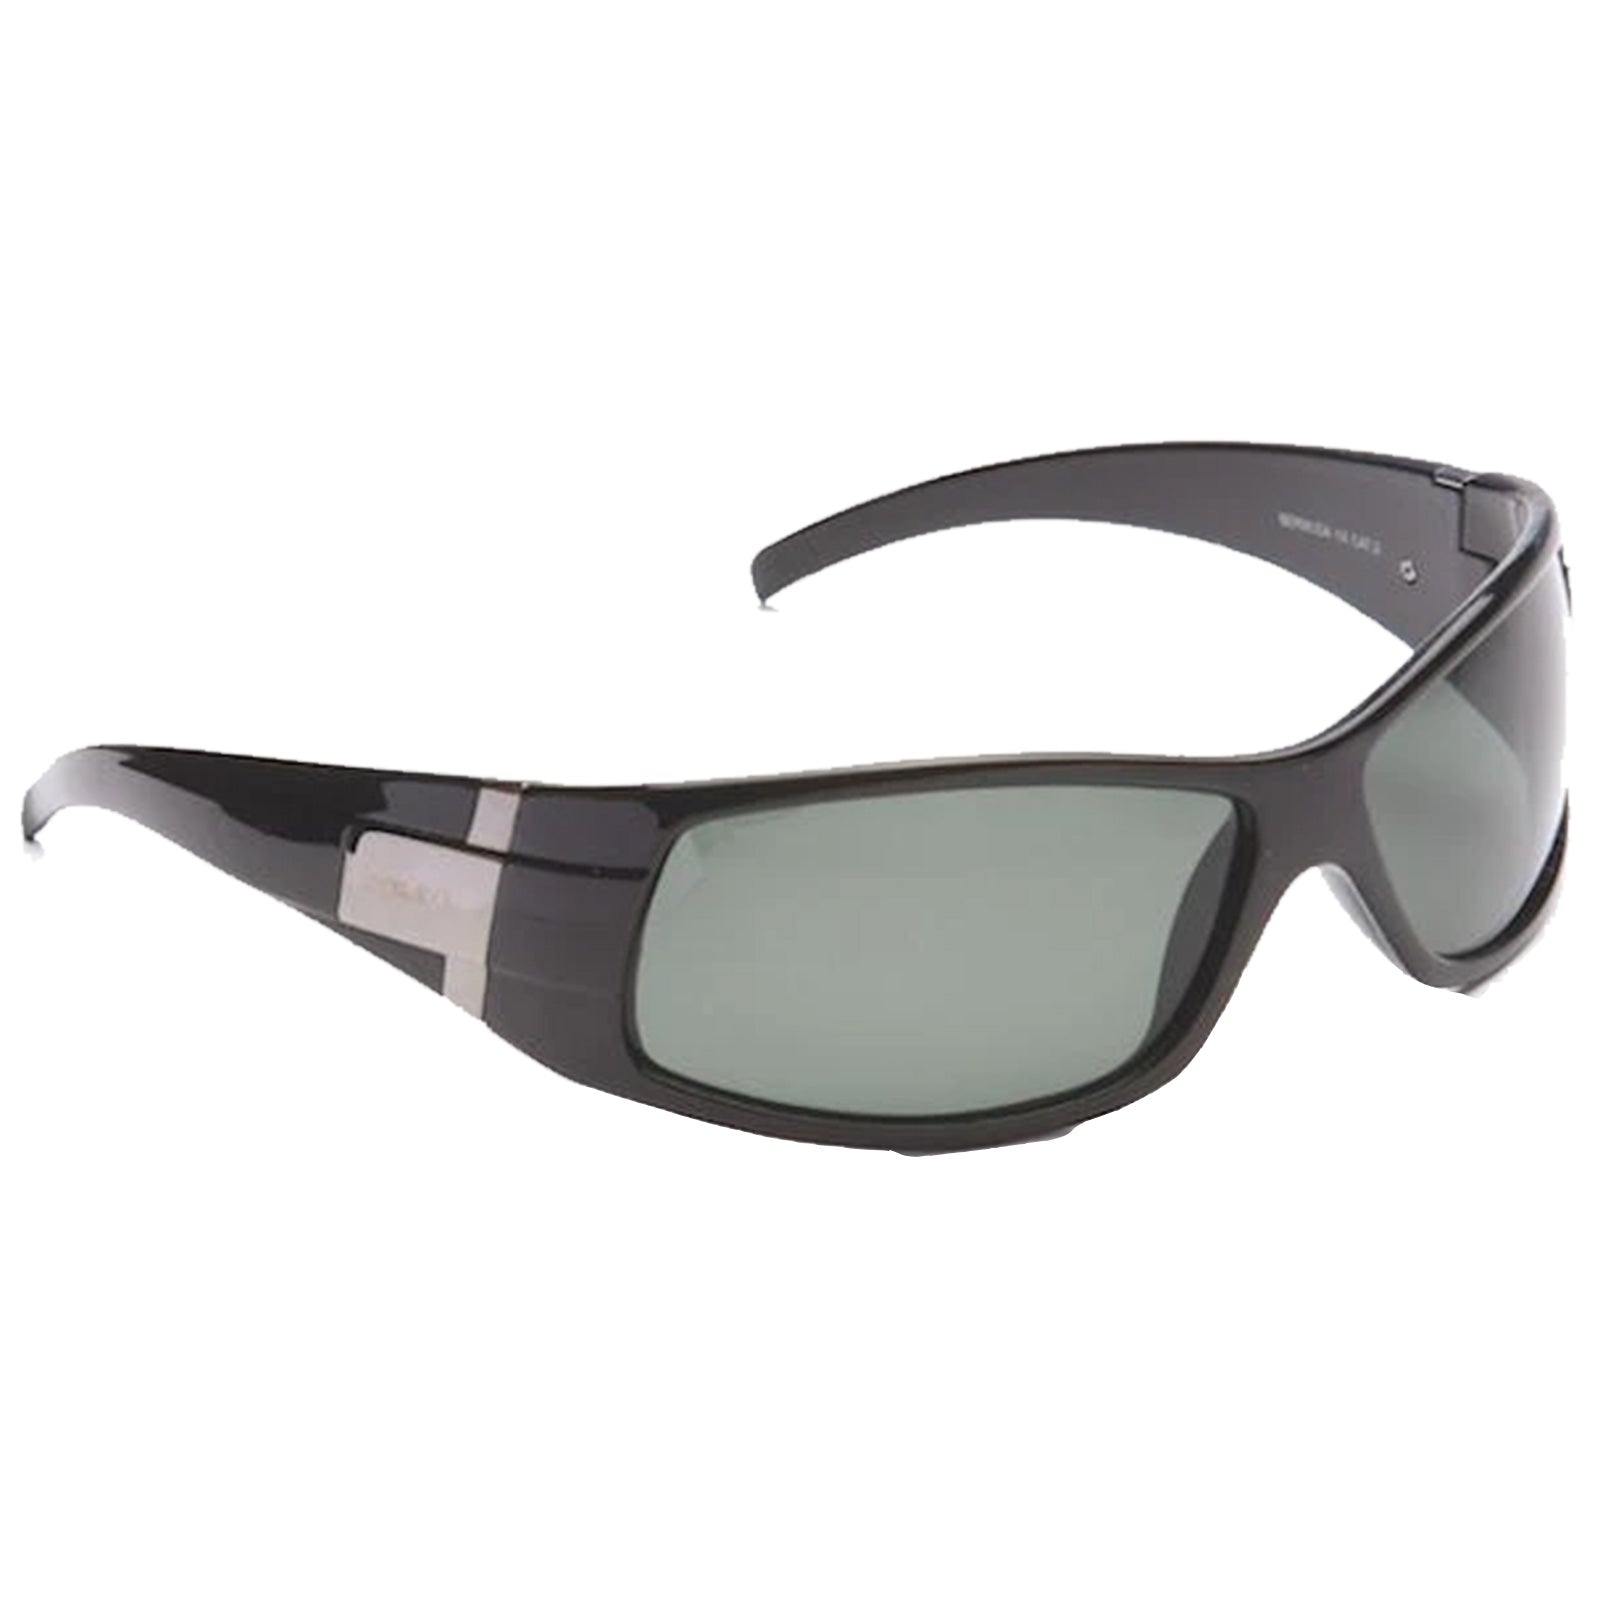 Eyelevel Mens Bermuda Polarized Sunglasses